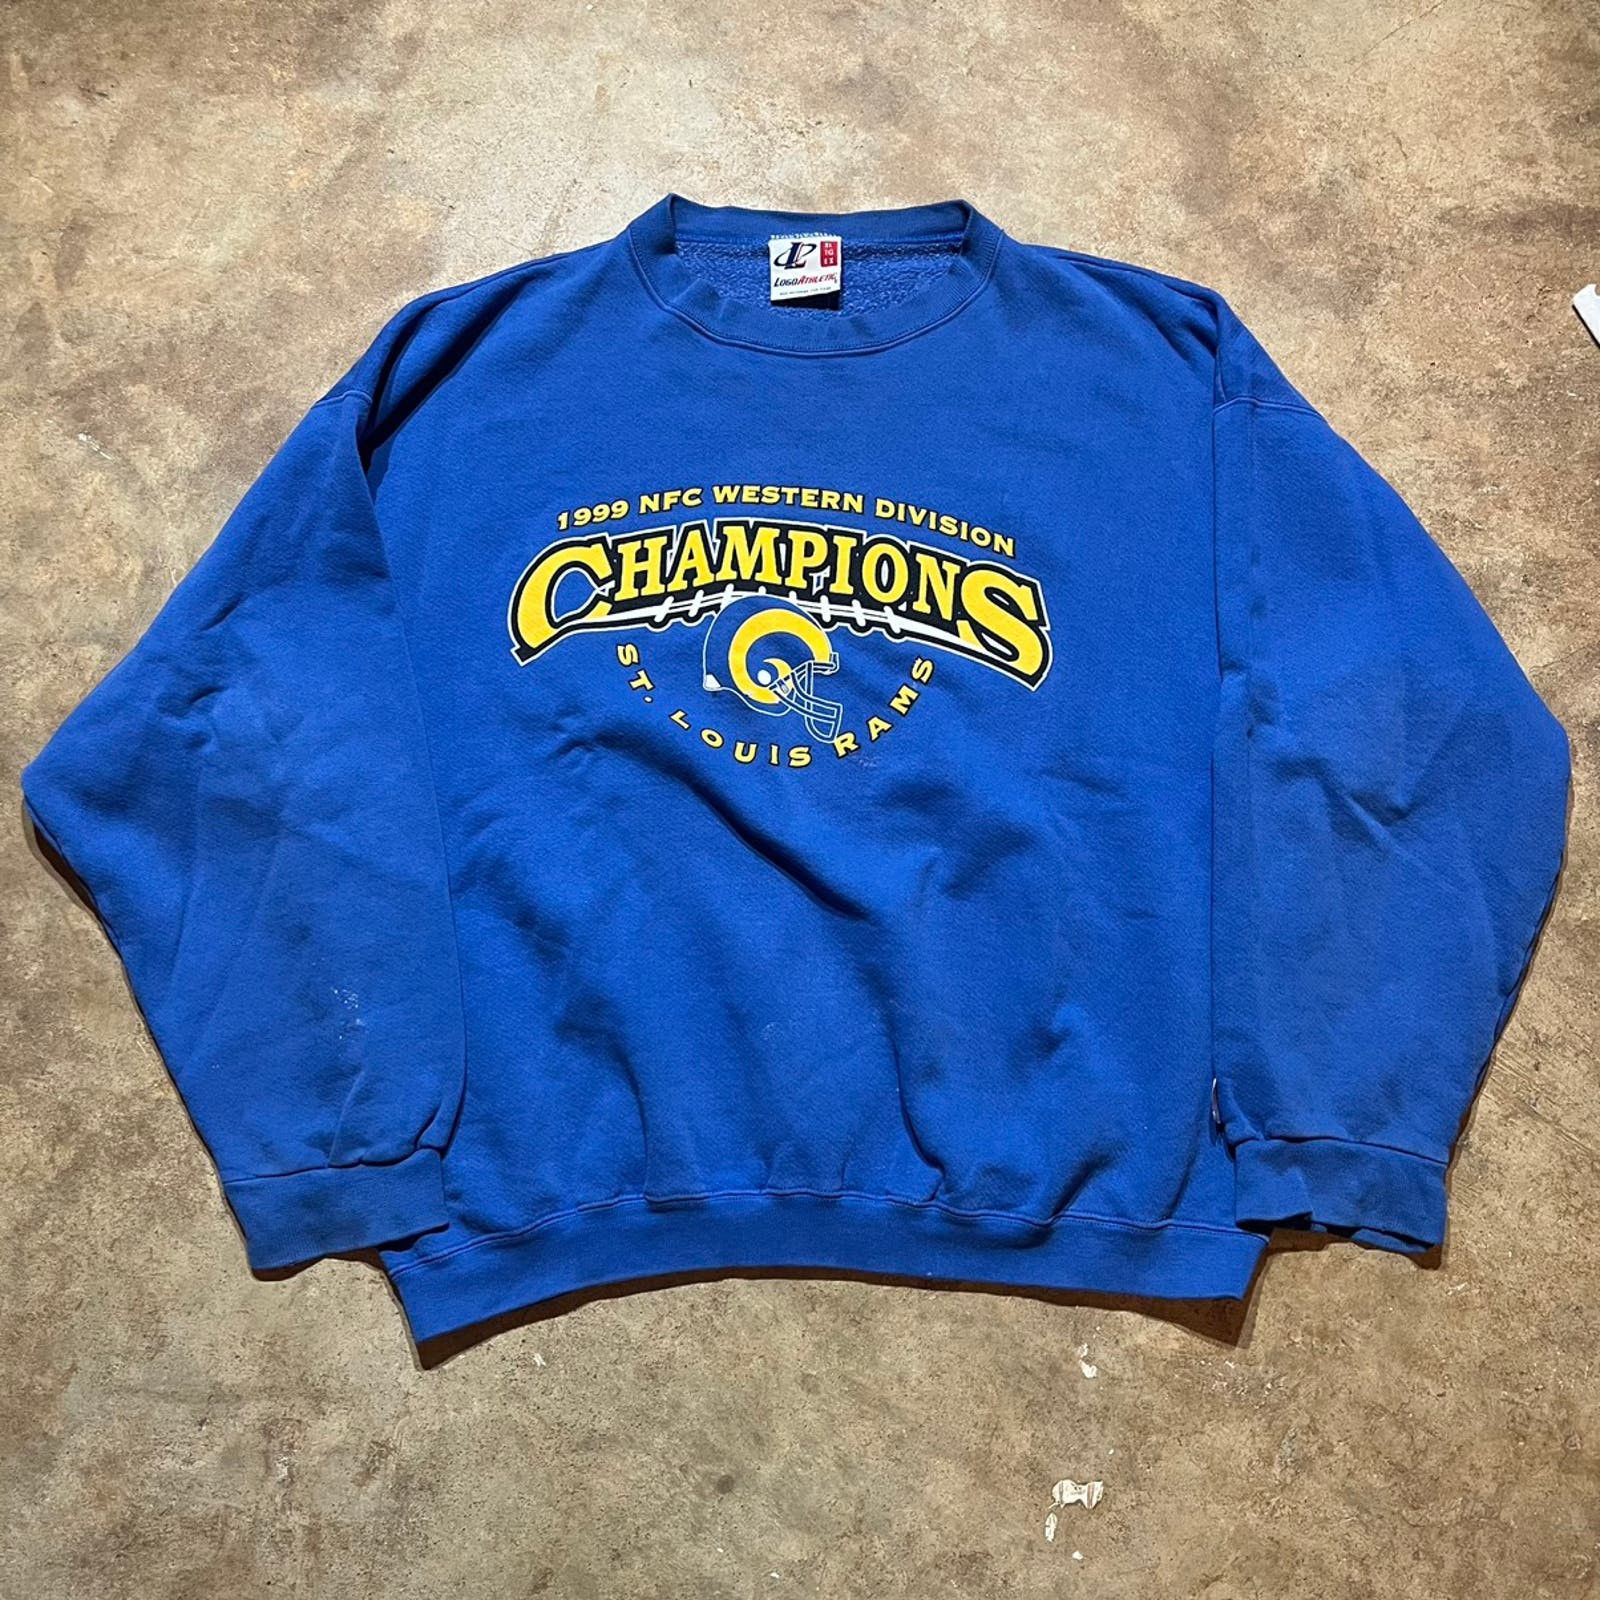 Vintage Vintage 1999 St Louis Rams NFL Champions Sweatshirt Size US XL / EU 56 / 4 - 1 Preview